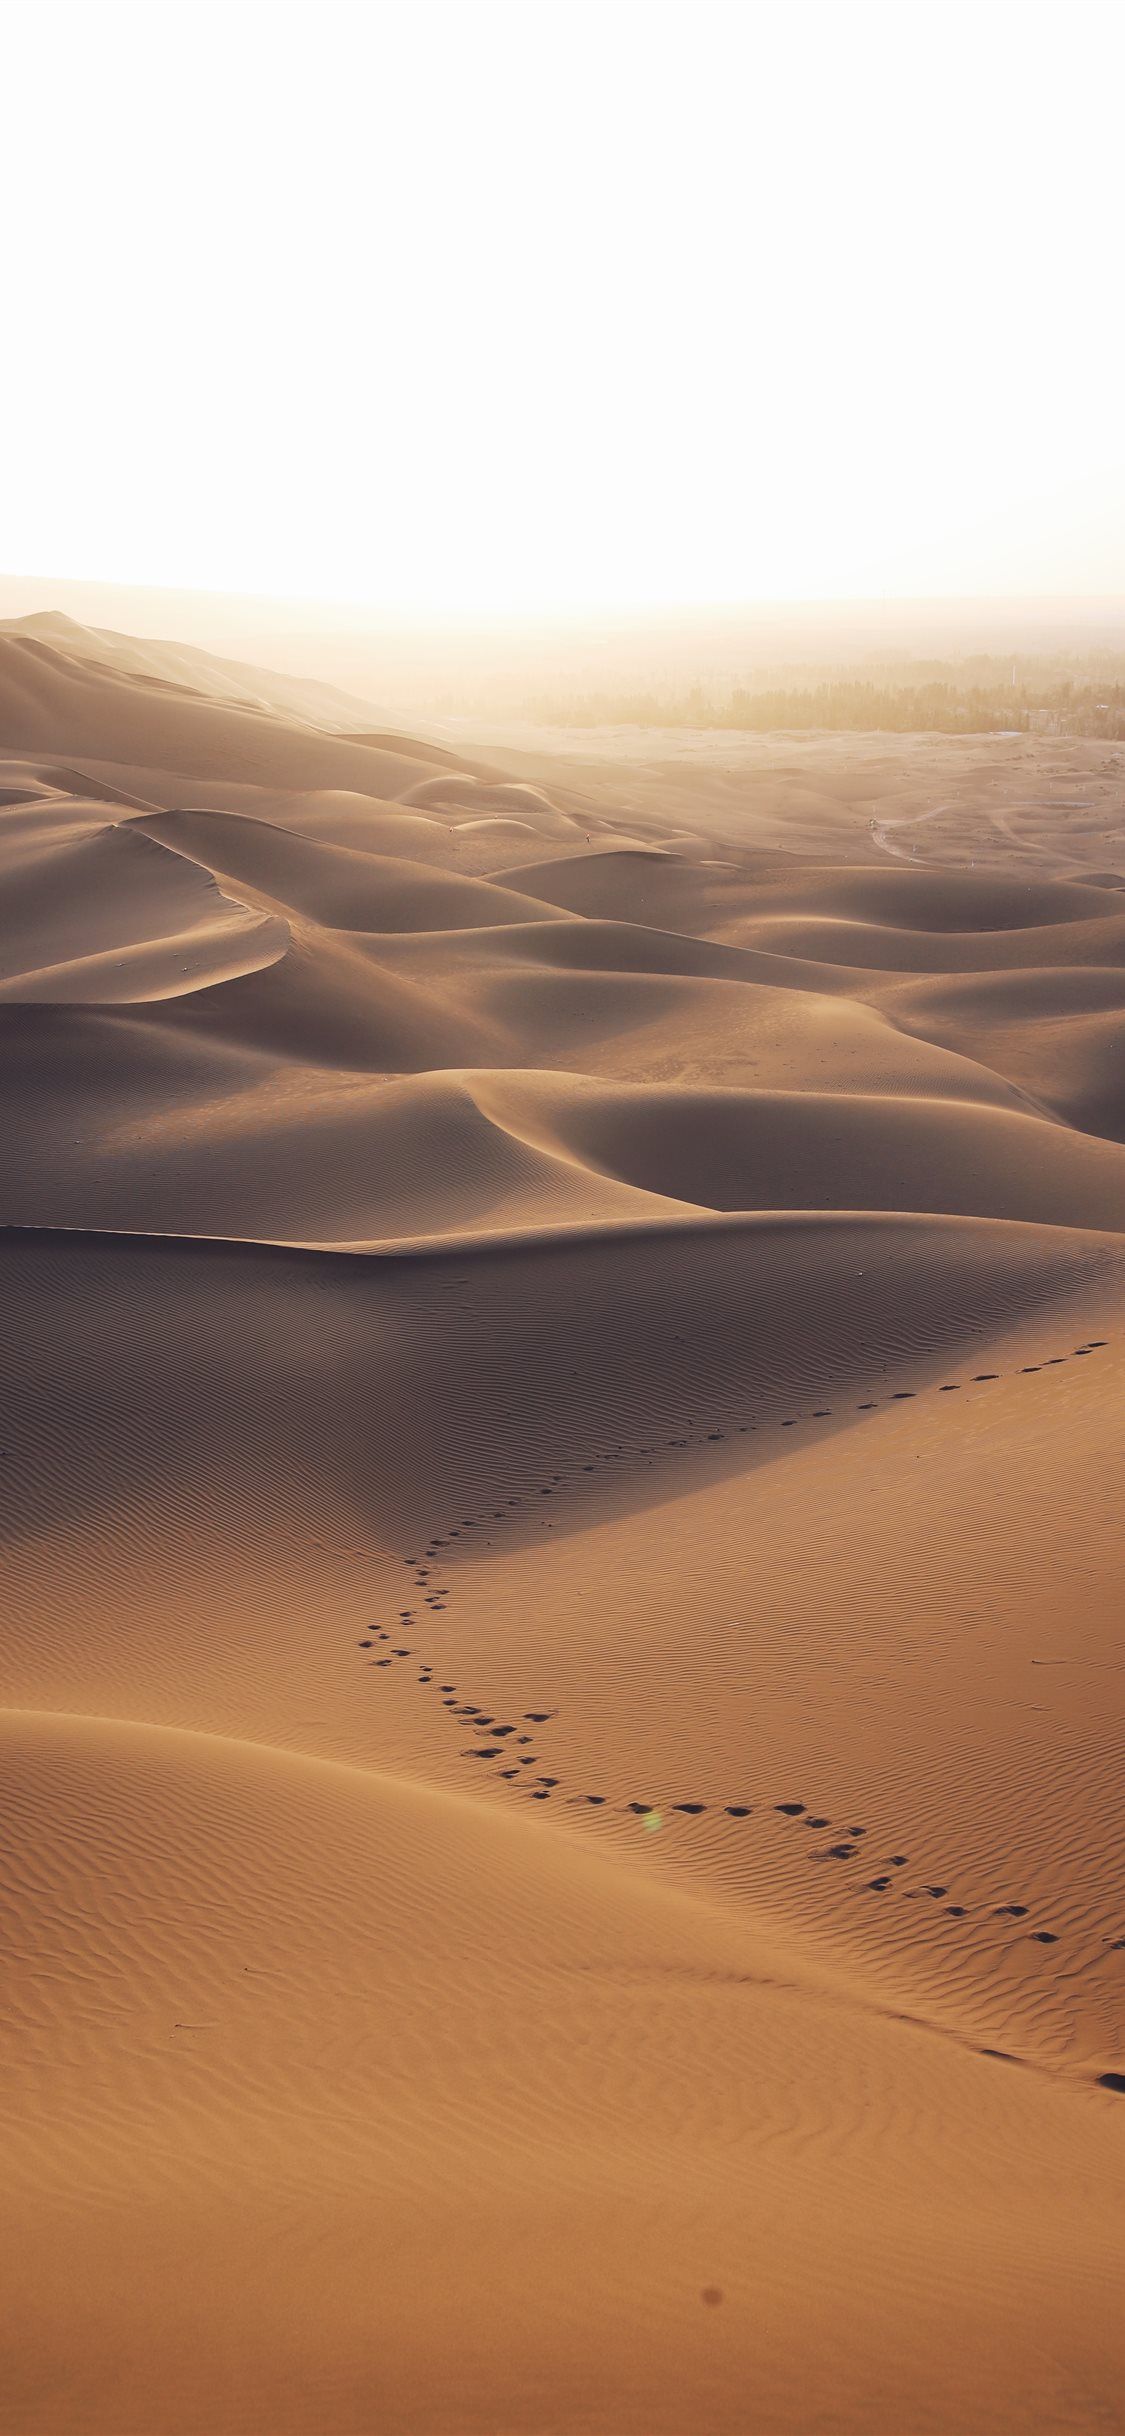 aerial photo of brown desert Wallpaper. iPhone wallpaper landscape, Desert background, iPhone background wallpaper